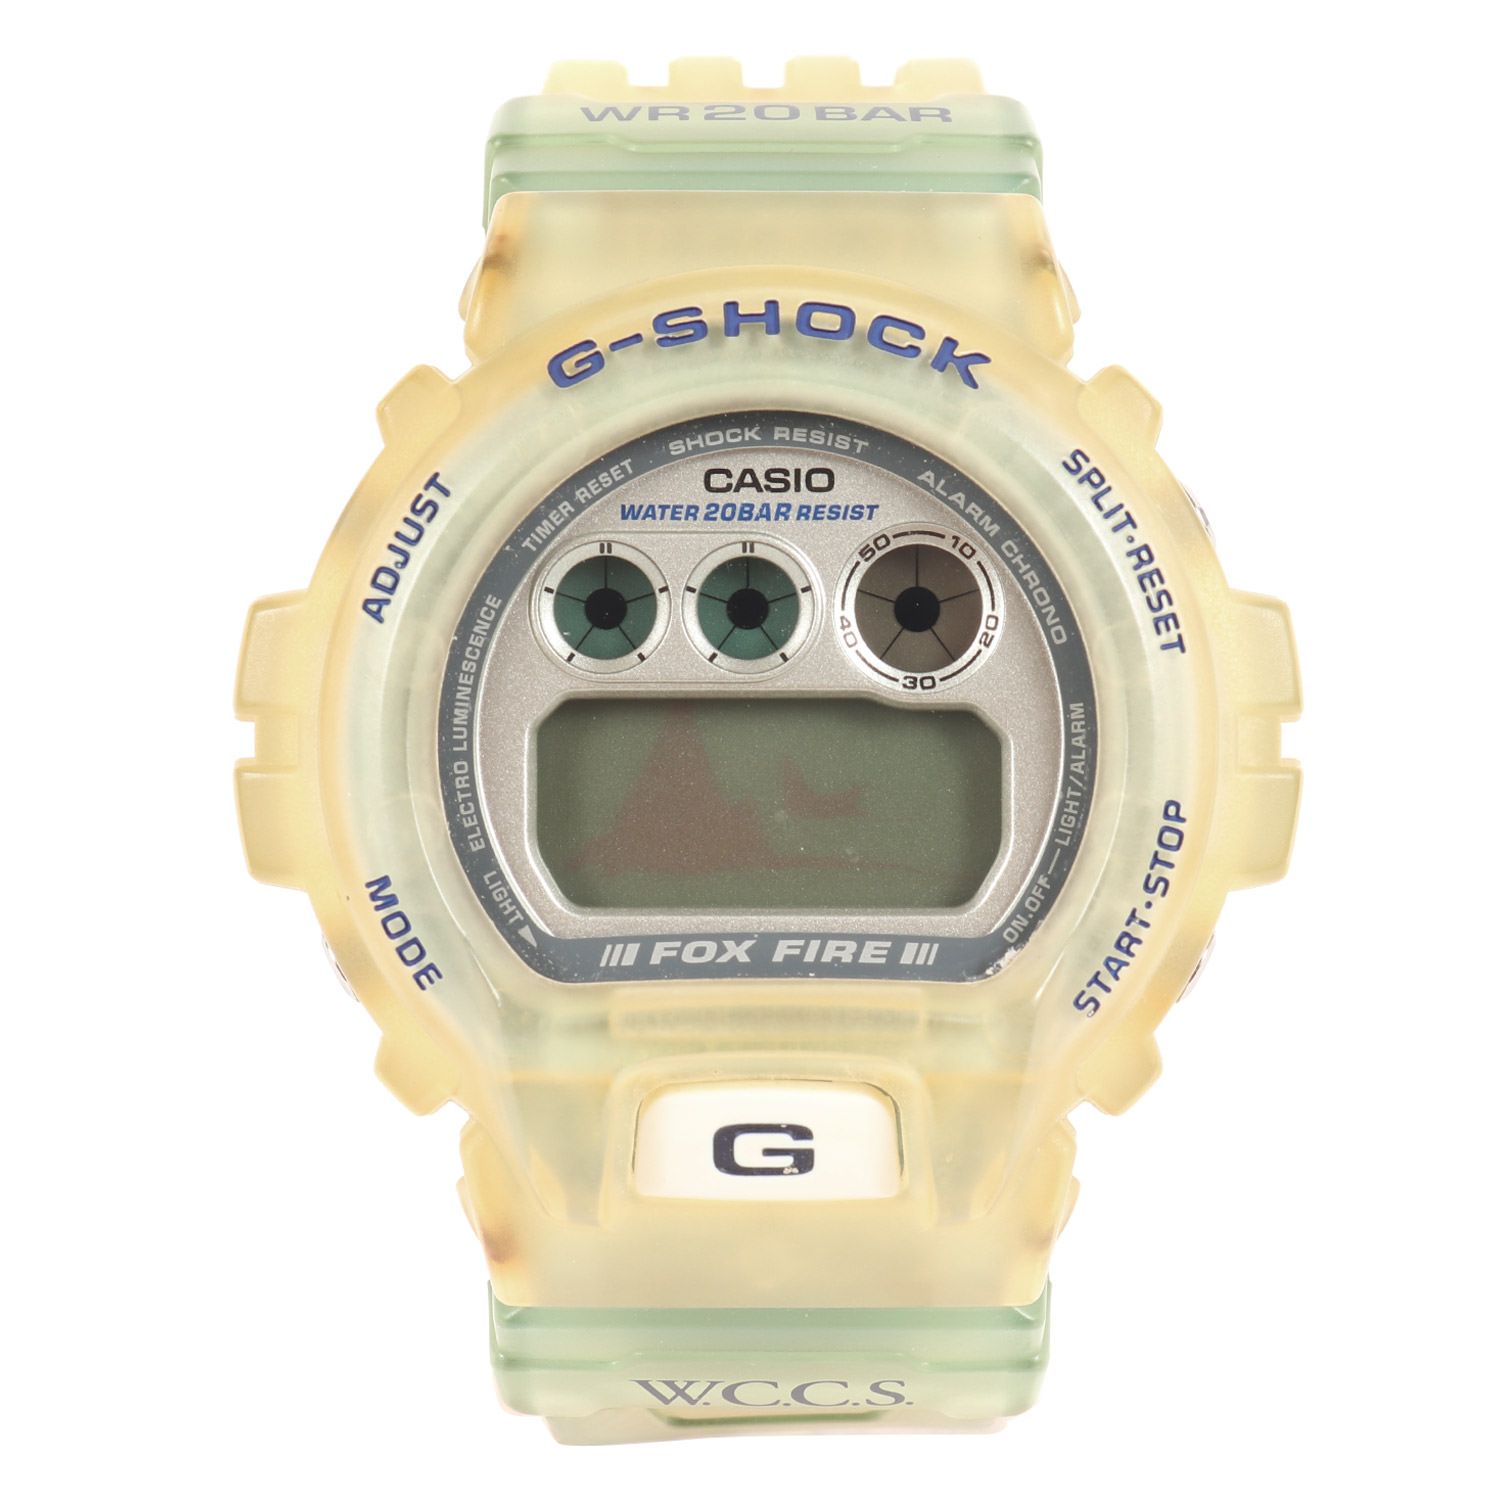 カシオG-SHOCK WCCS 世界サンゴ礁保護協会 DW-6900WC-2AT - 腕時計